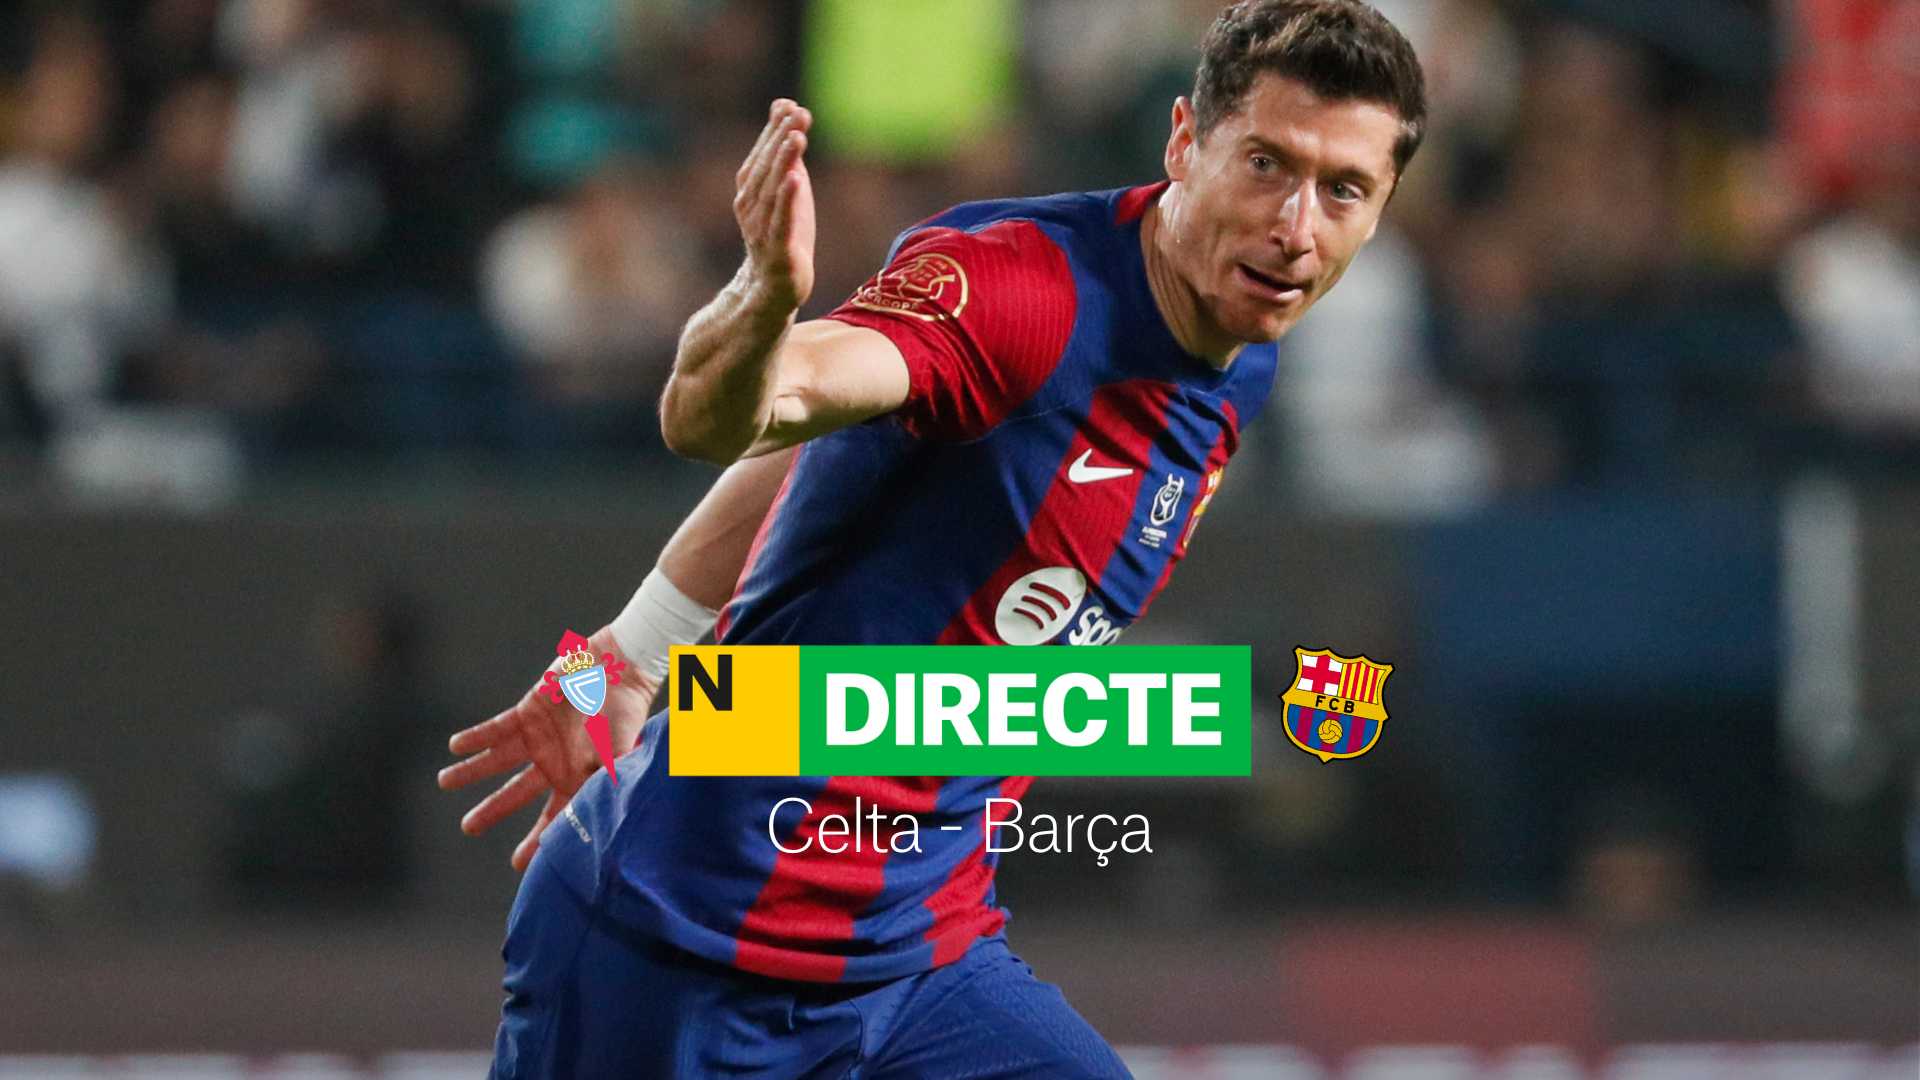 Celta-Barça de LaLiga EA Sports, avui en DIRECTE | Resultat, resum i gols